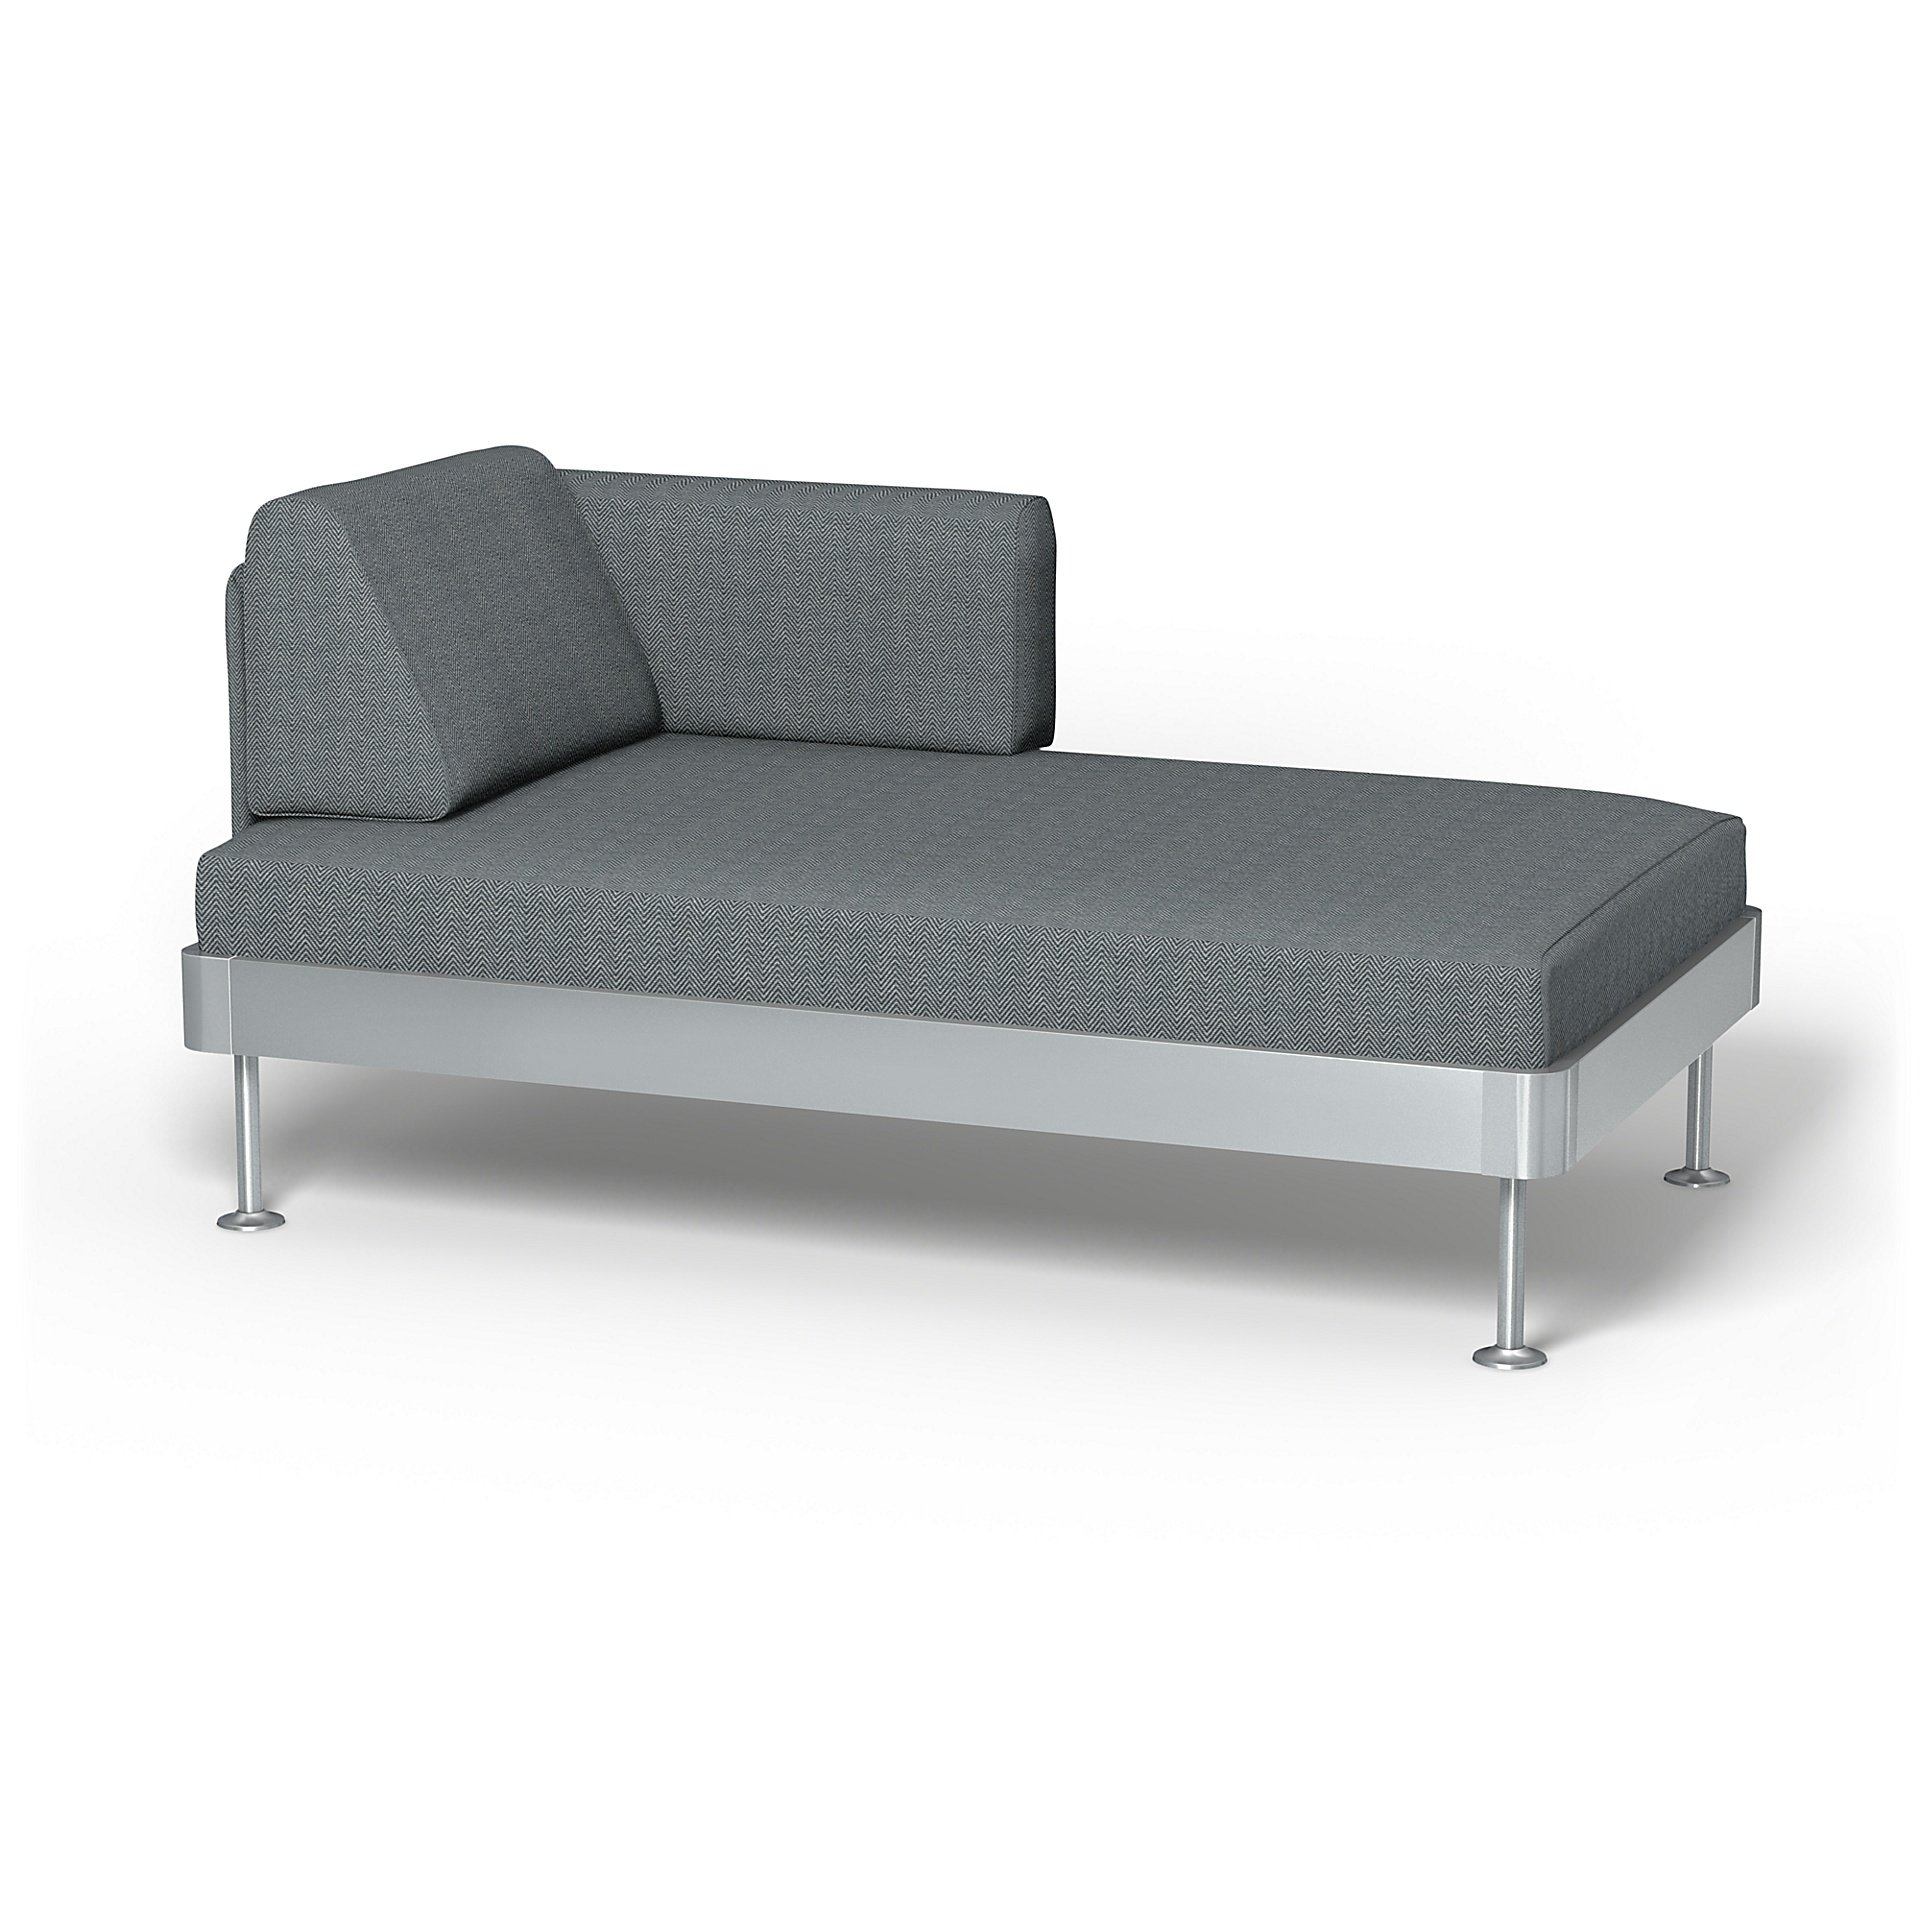 IKEA - Delaktig Chaise Longue Cover, Denim, Cotton - Bemz